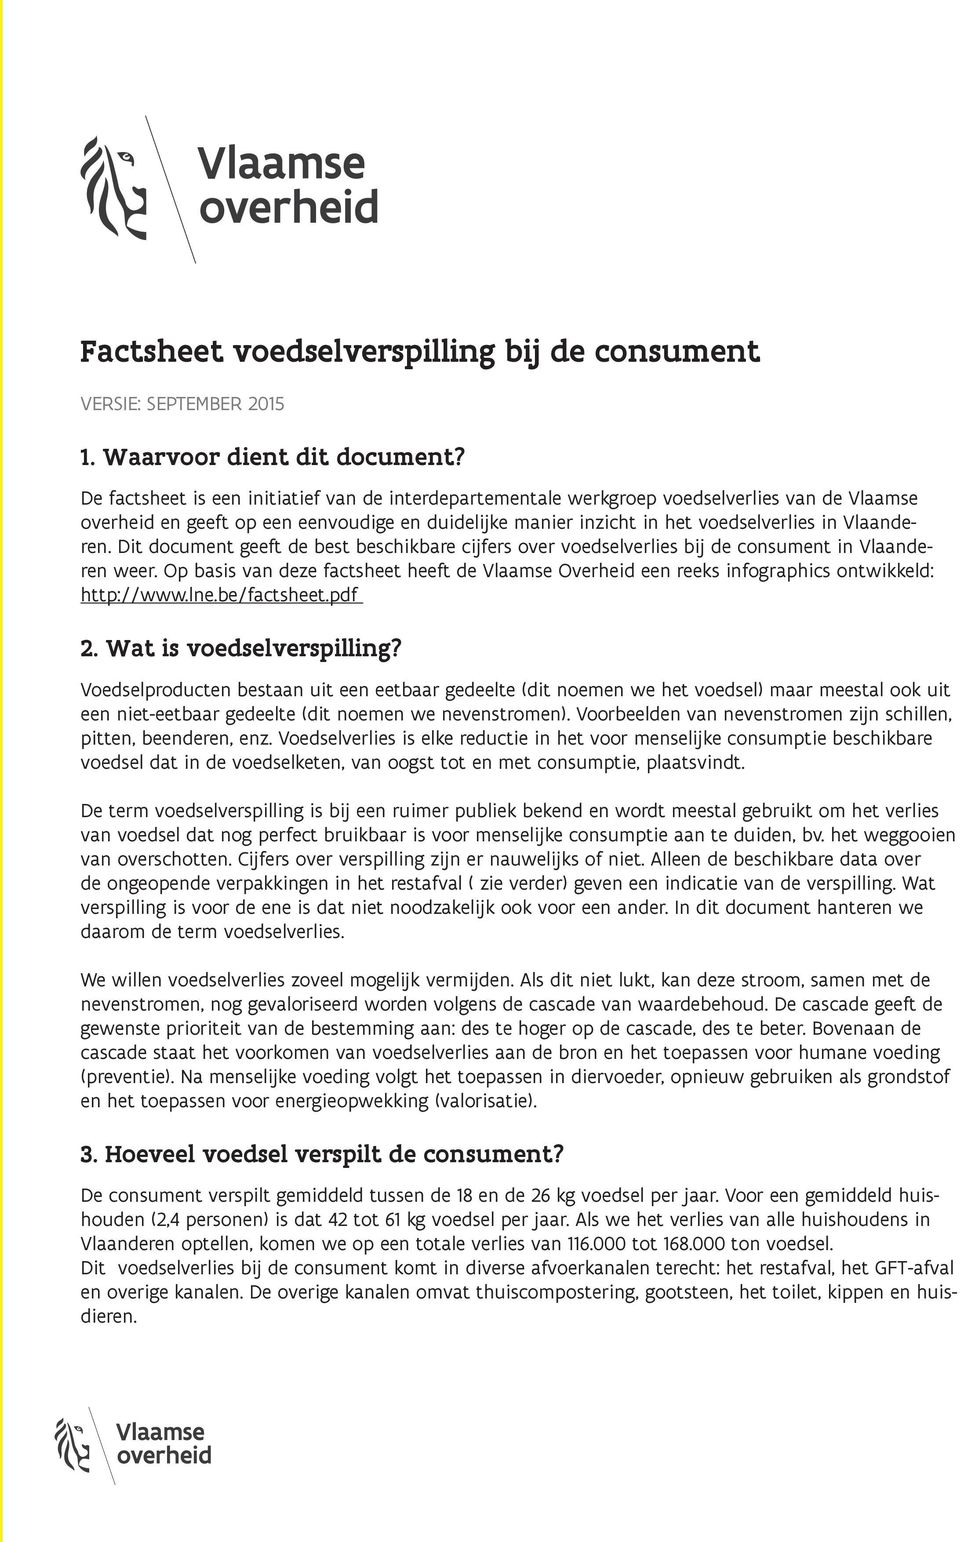 Dit document geeft de best beschikbare cijfers over voedselverlies bij de consument in Vlaanderen weer.